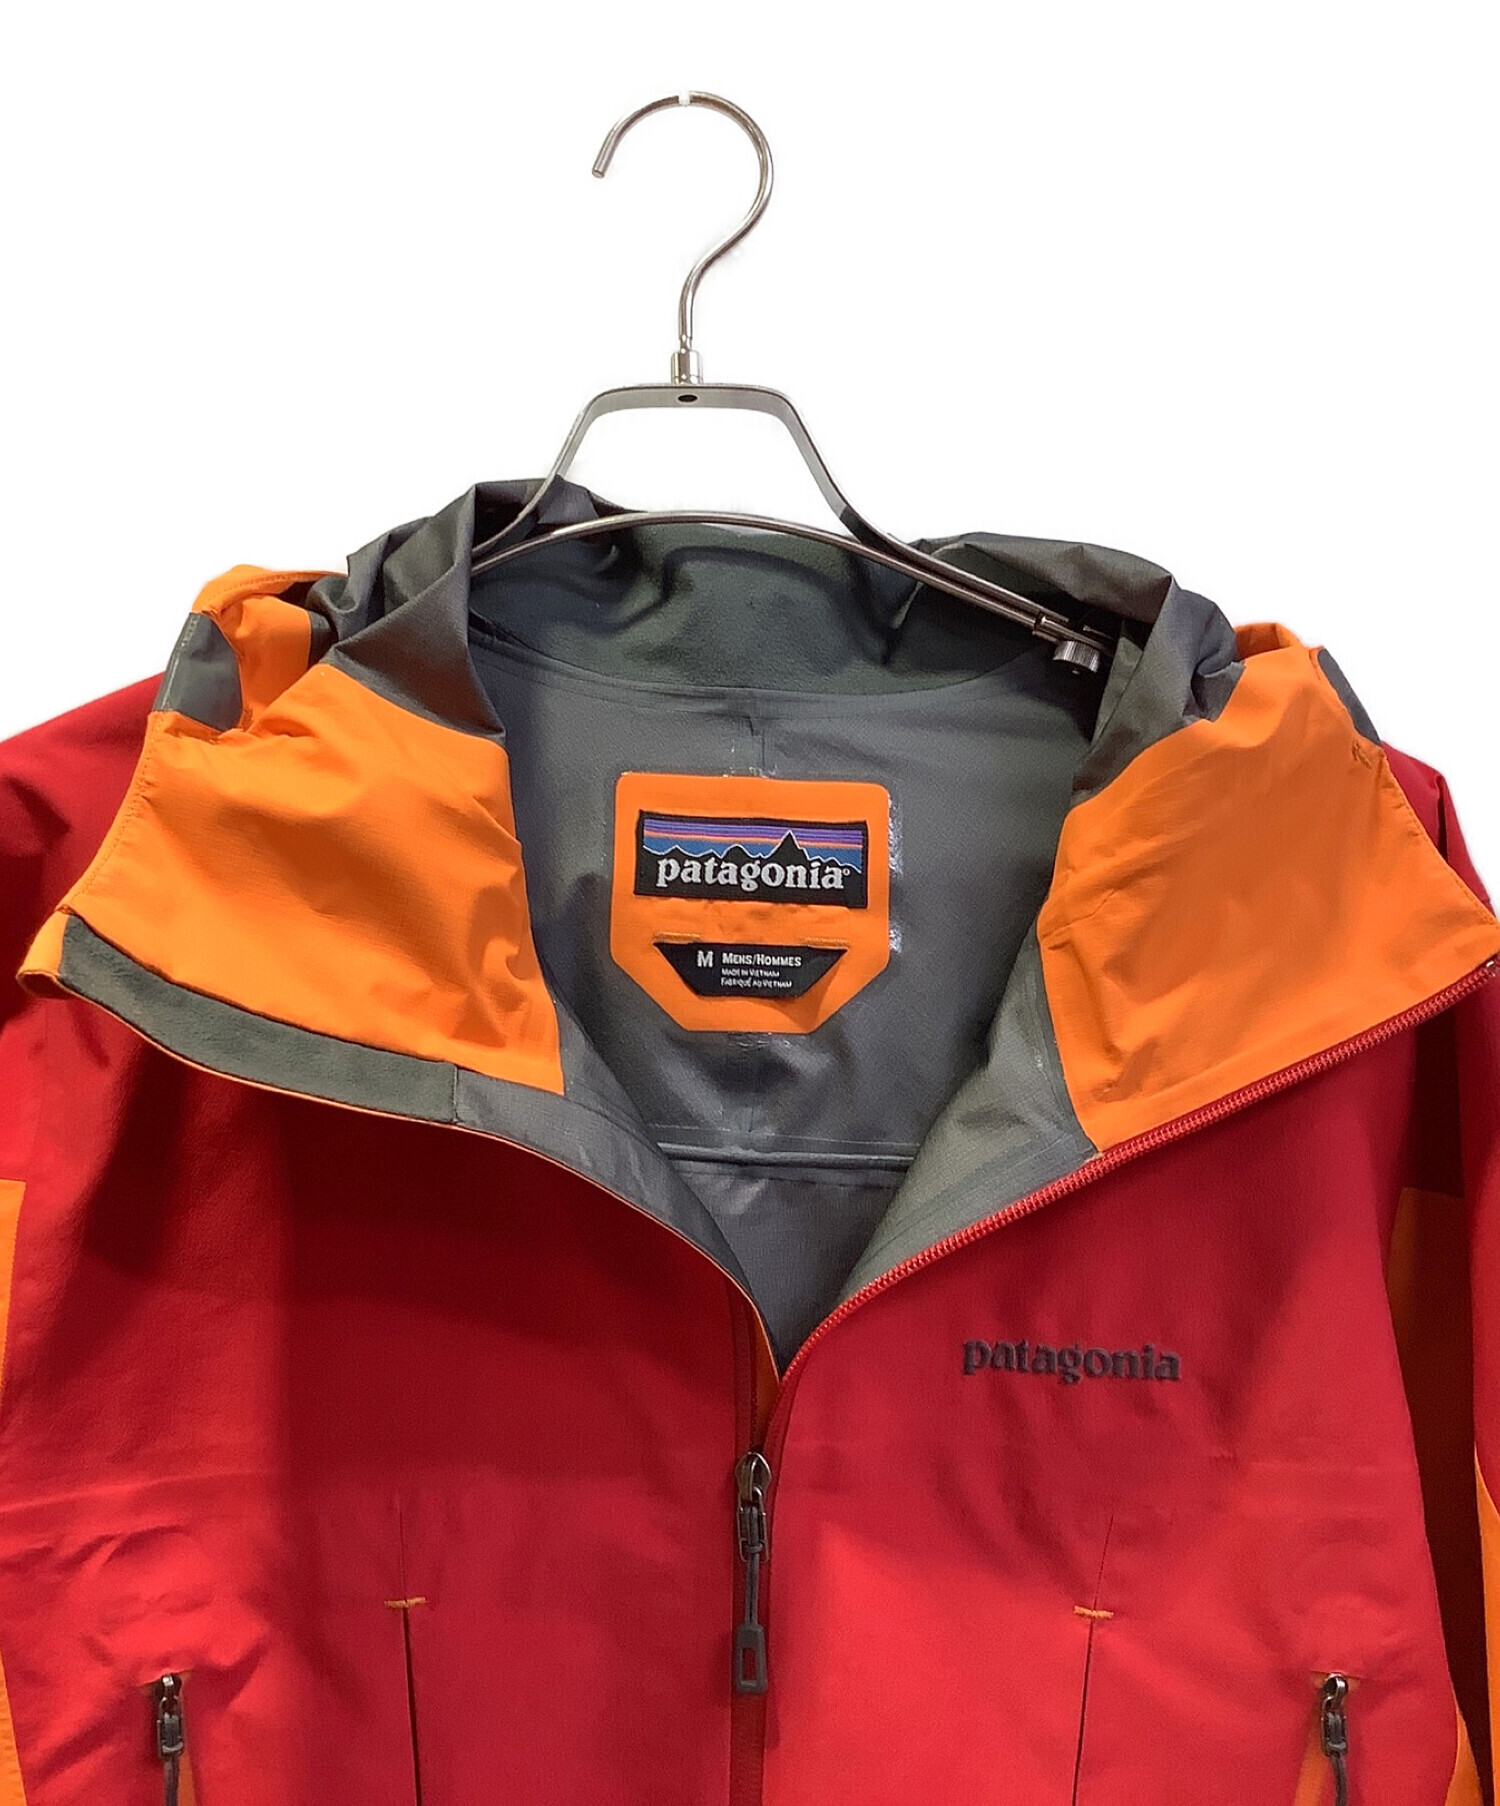 Patagonia (パタゴニア) スーパーアルパインジャケット レッド×オレンジ サイズ:Ｍ